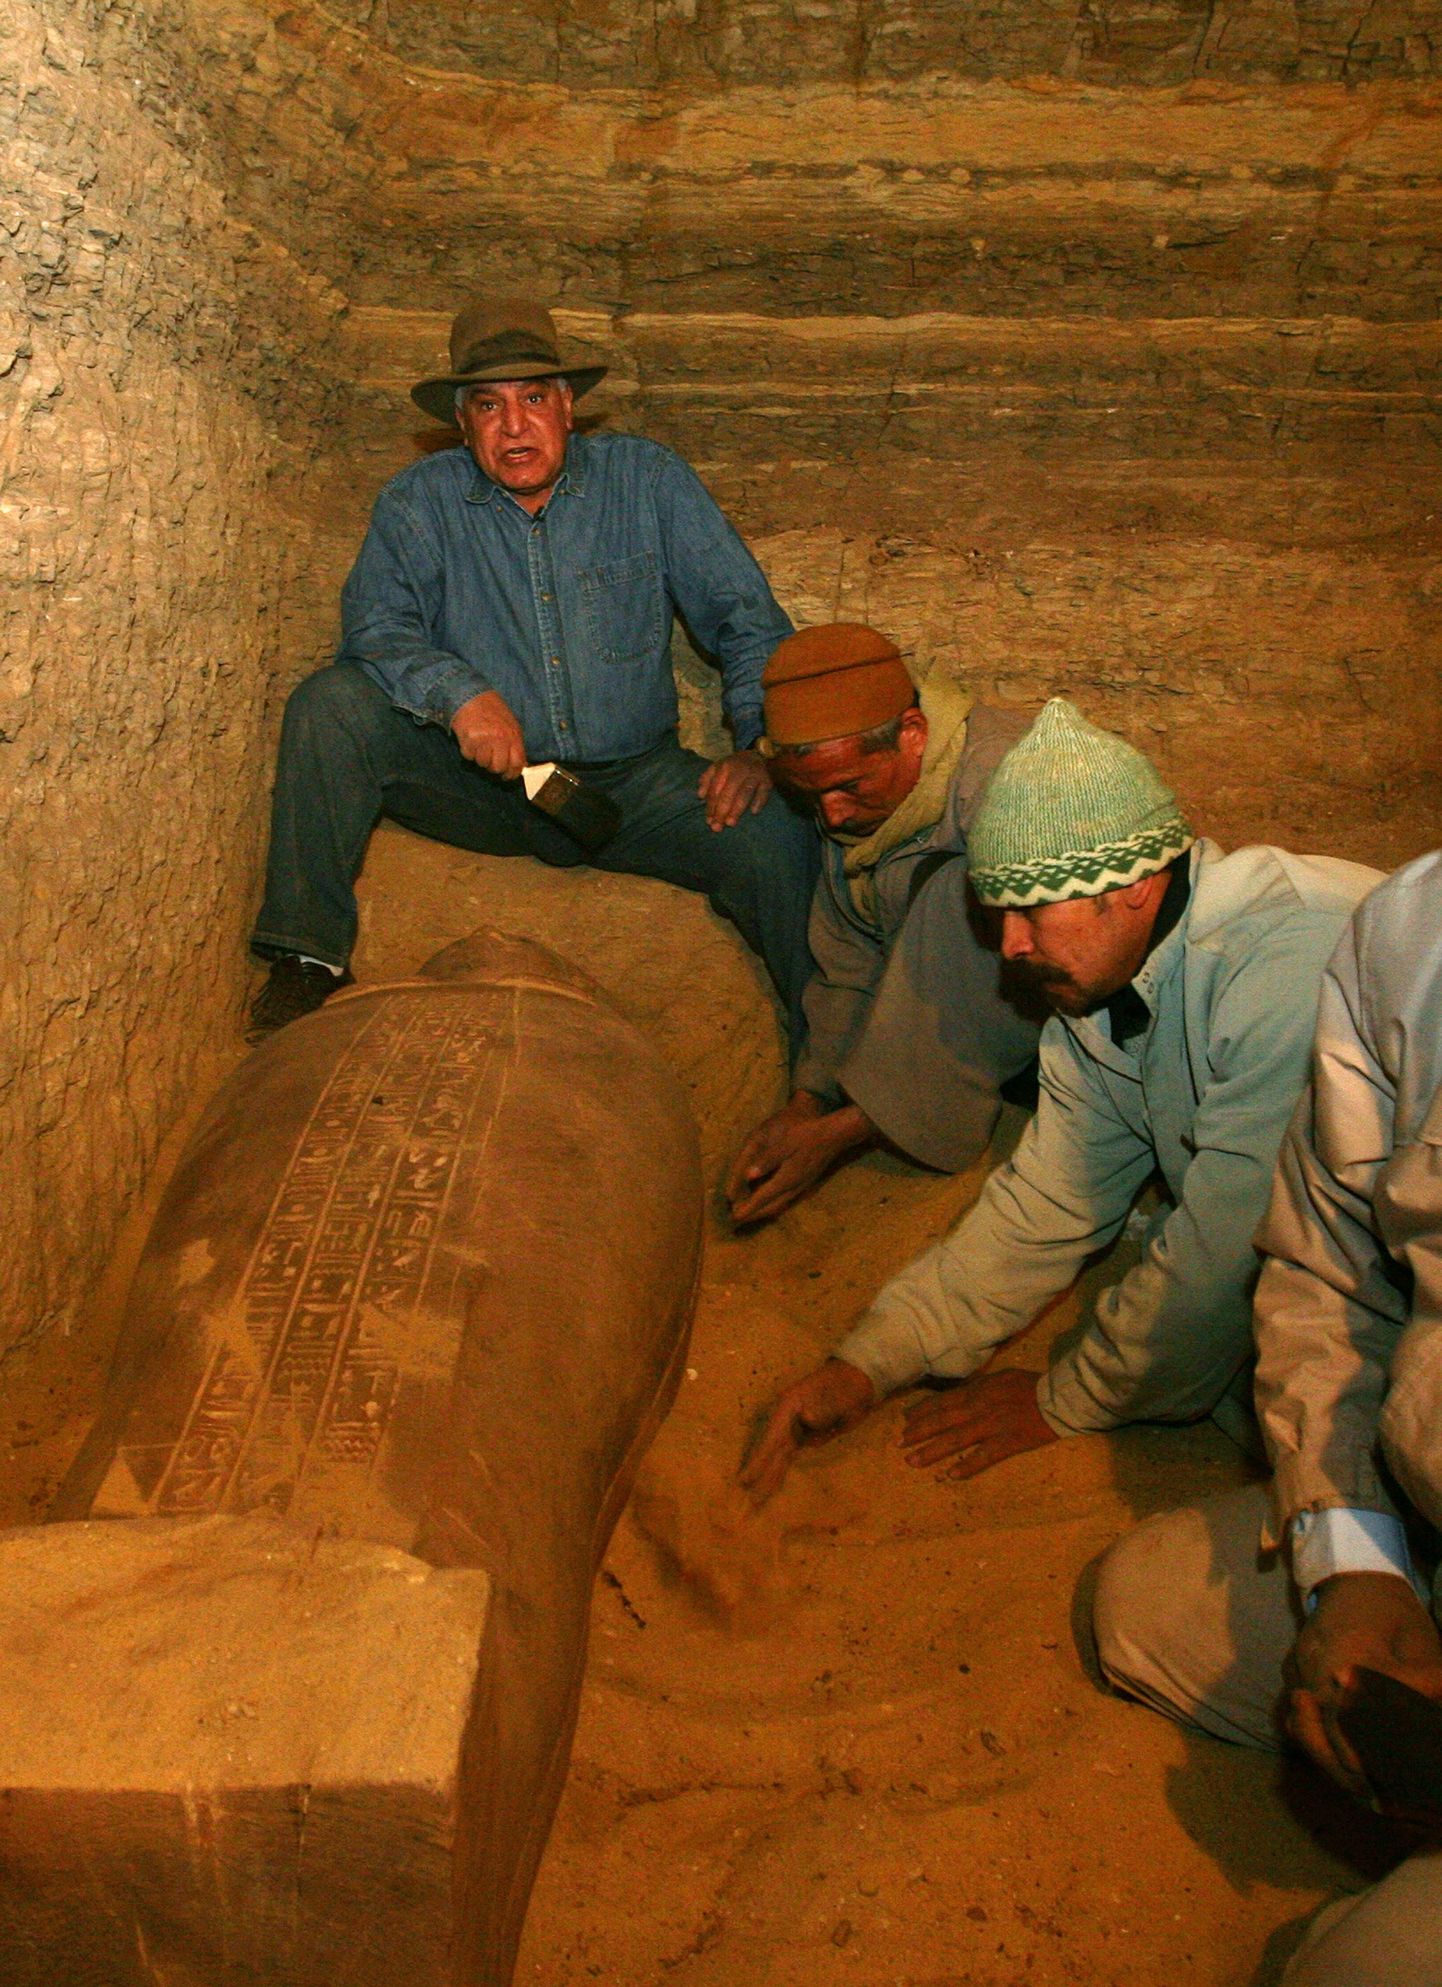 Egiptuse peaarheoloog Zahi Hawass koos töölistega sarkofaage avamas